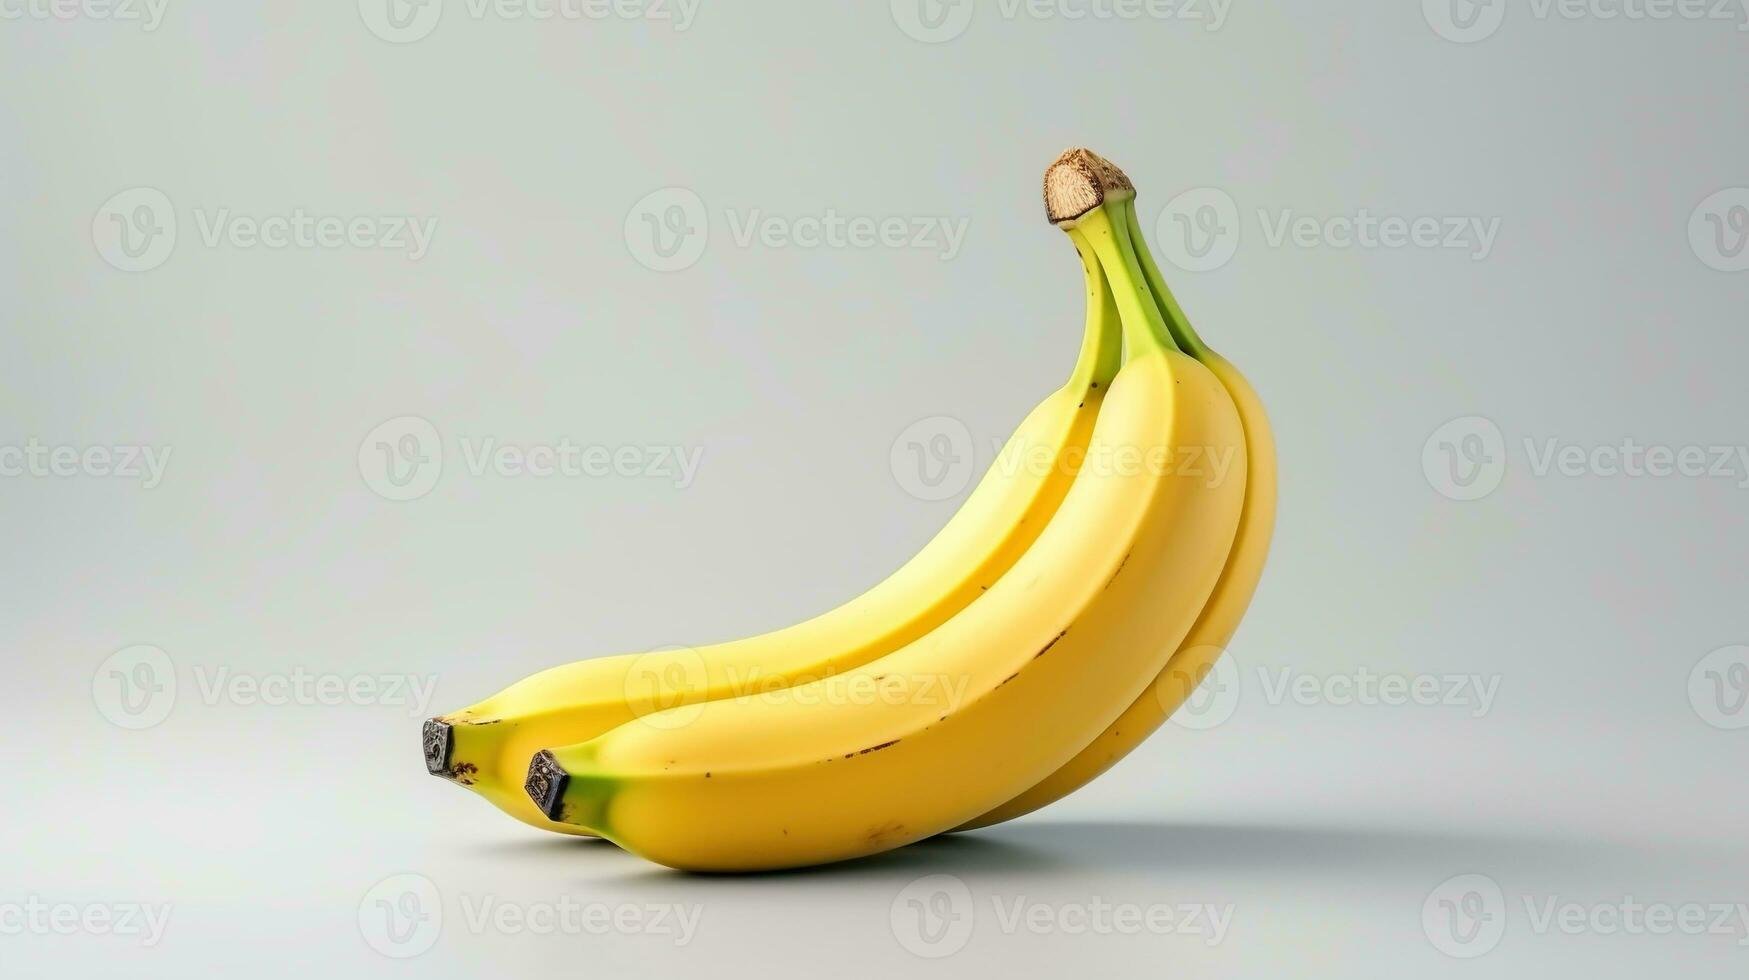 Banana Isolated on the Minimalist Background photo